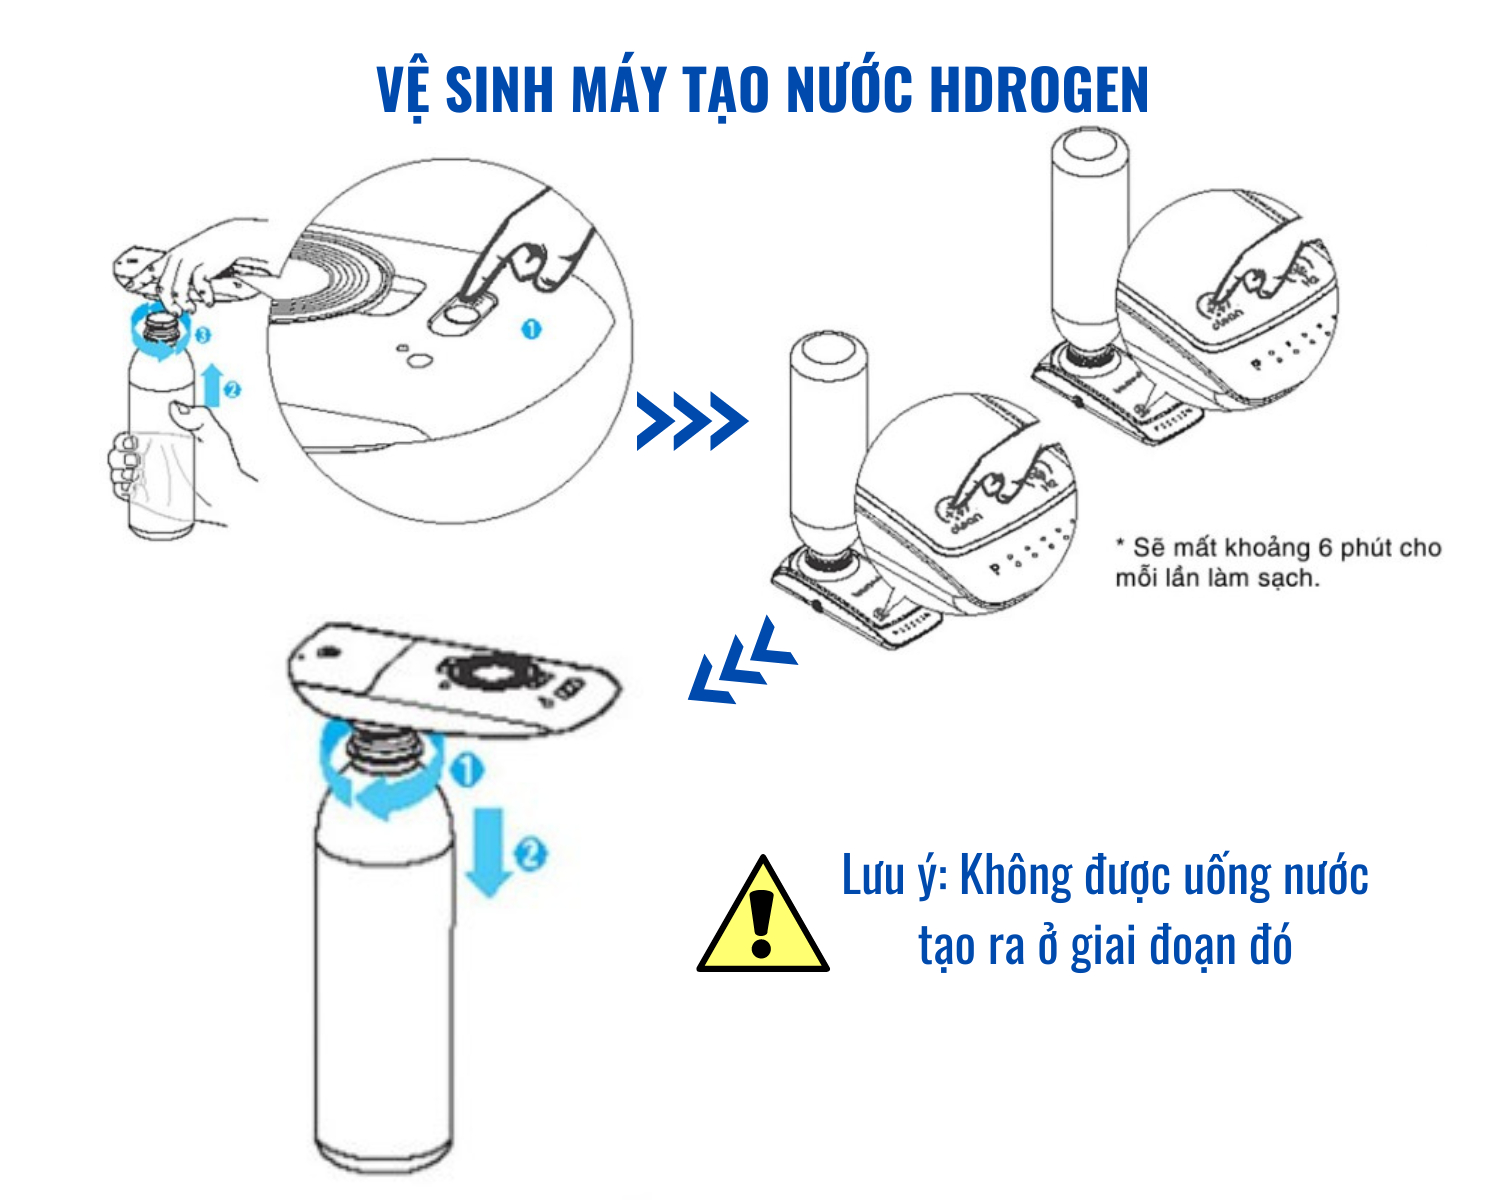 Máy Tạo Nước Hydrogen Cầm Tay BTH-100P SANG TRỌNG | HomeAZ.vn